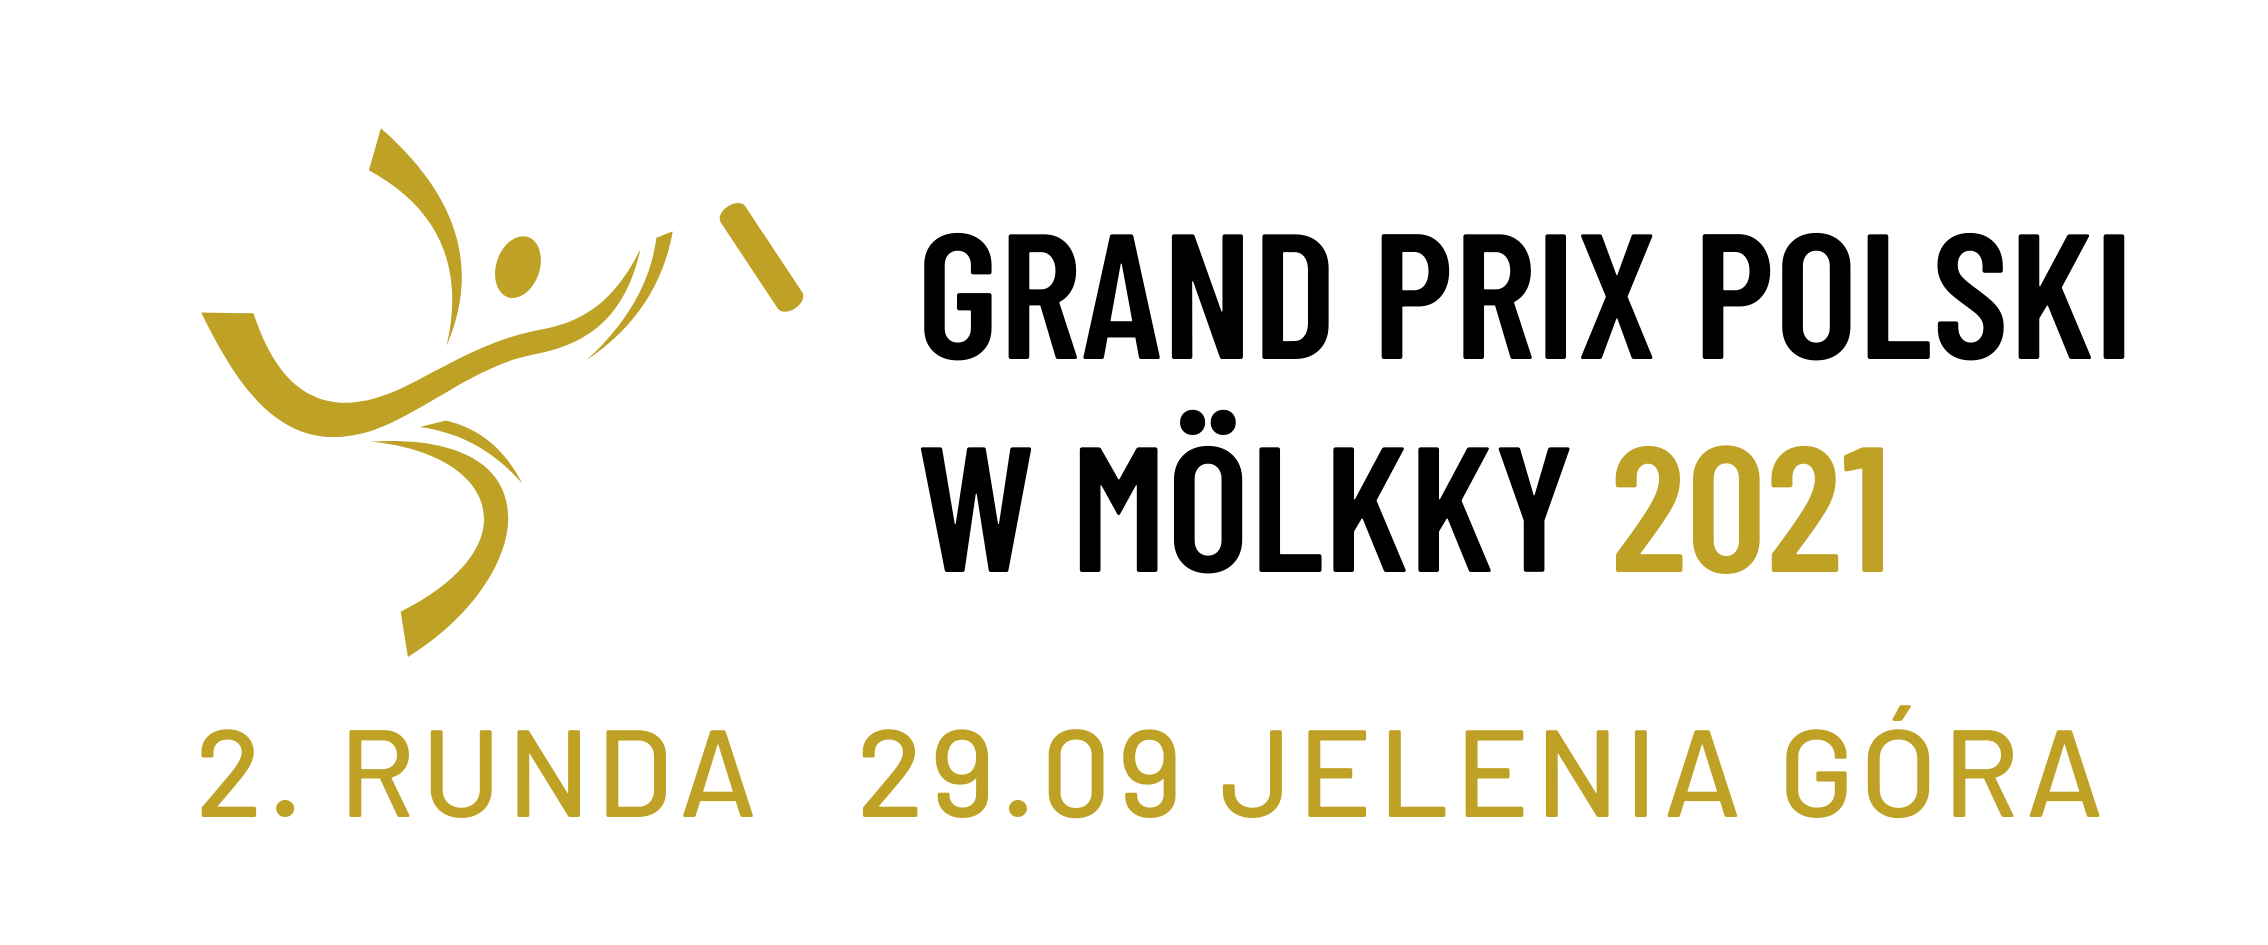 Grand Prix Polski w Mölkky 2021 - Event 2/5